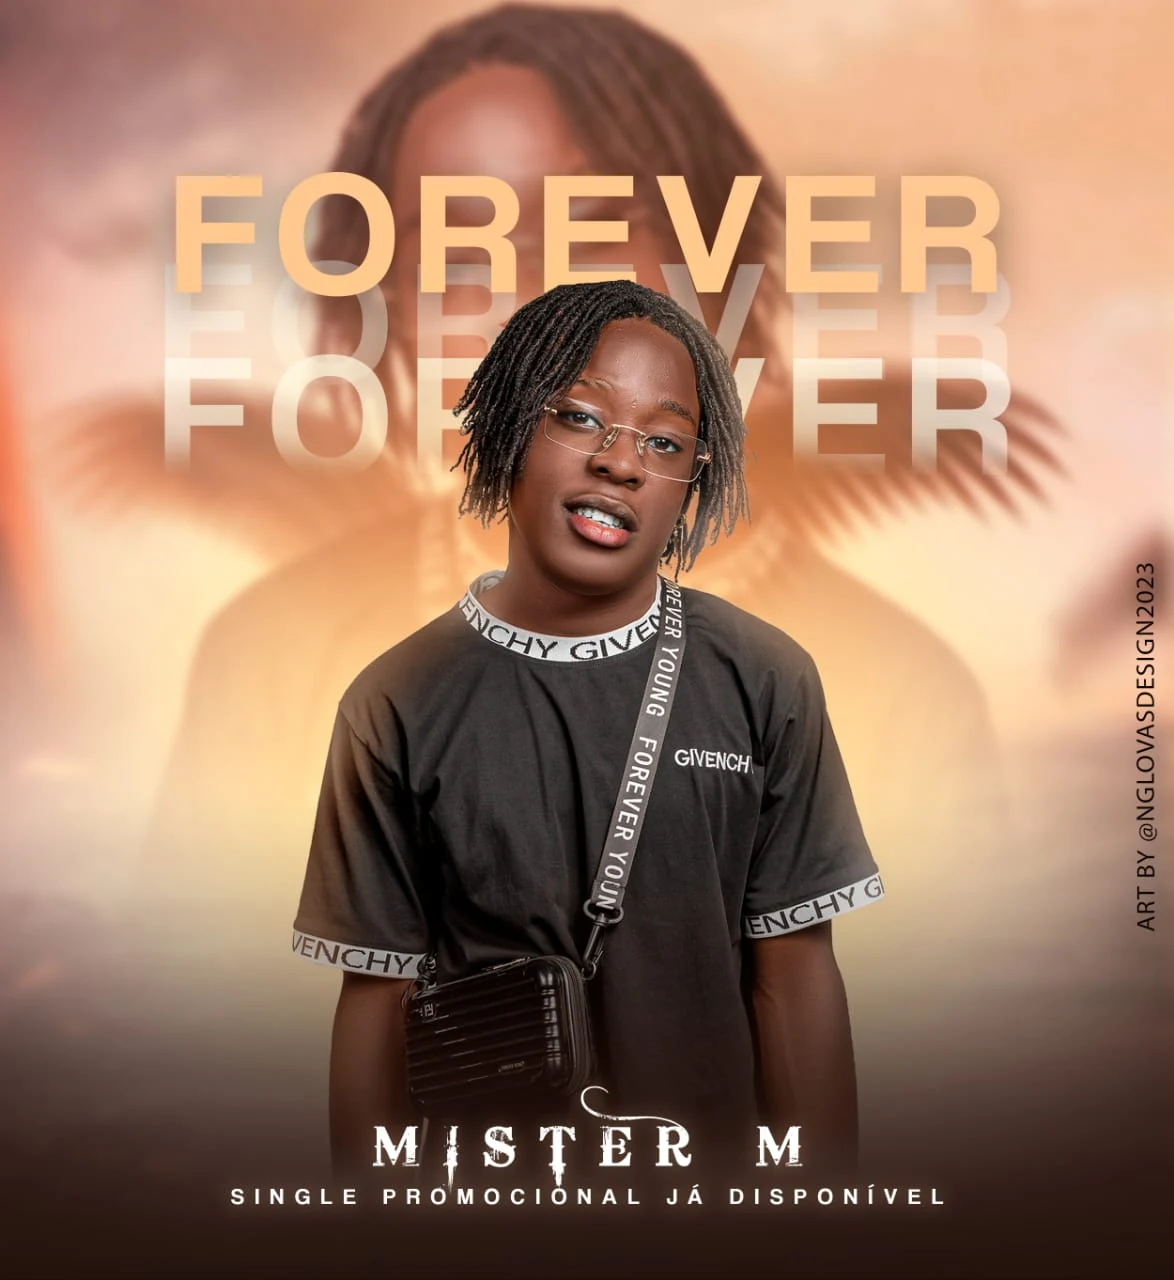 Mister M - Forever